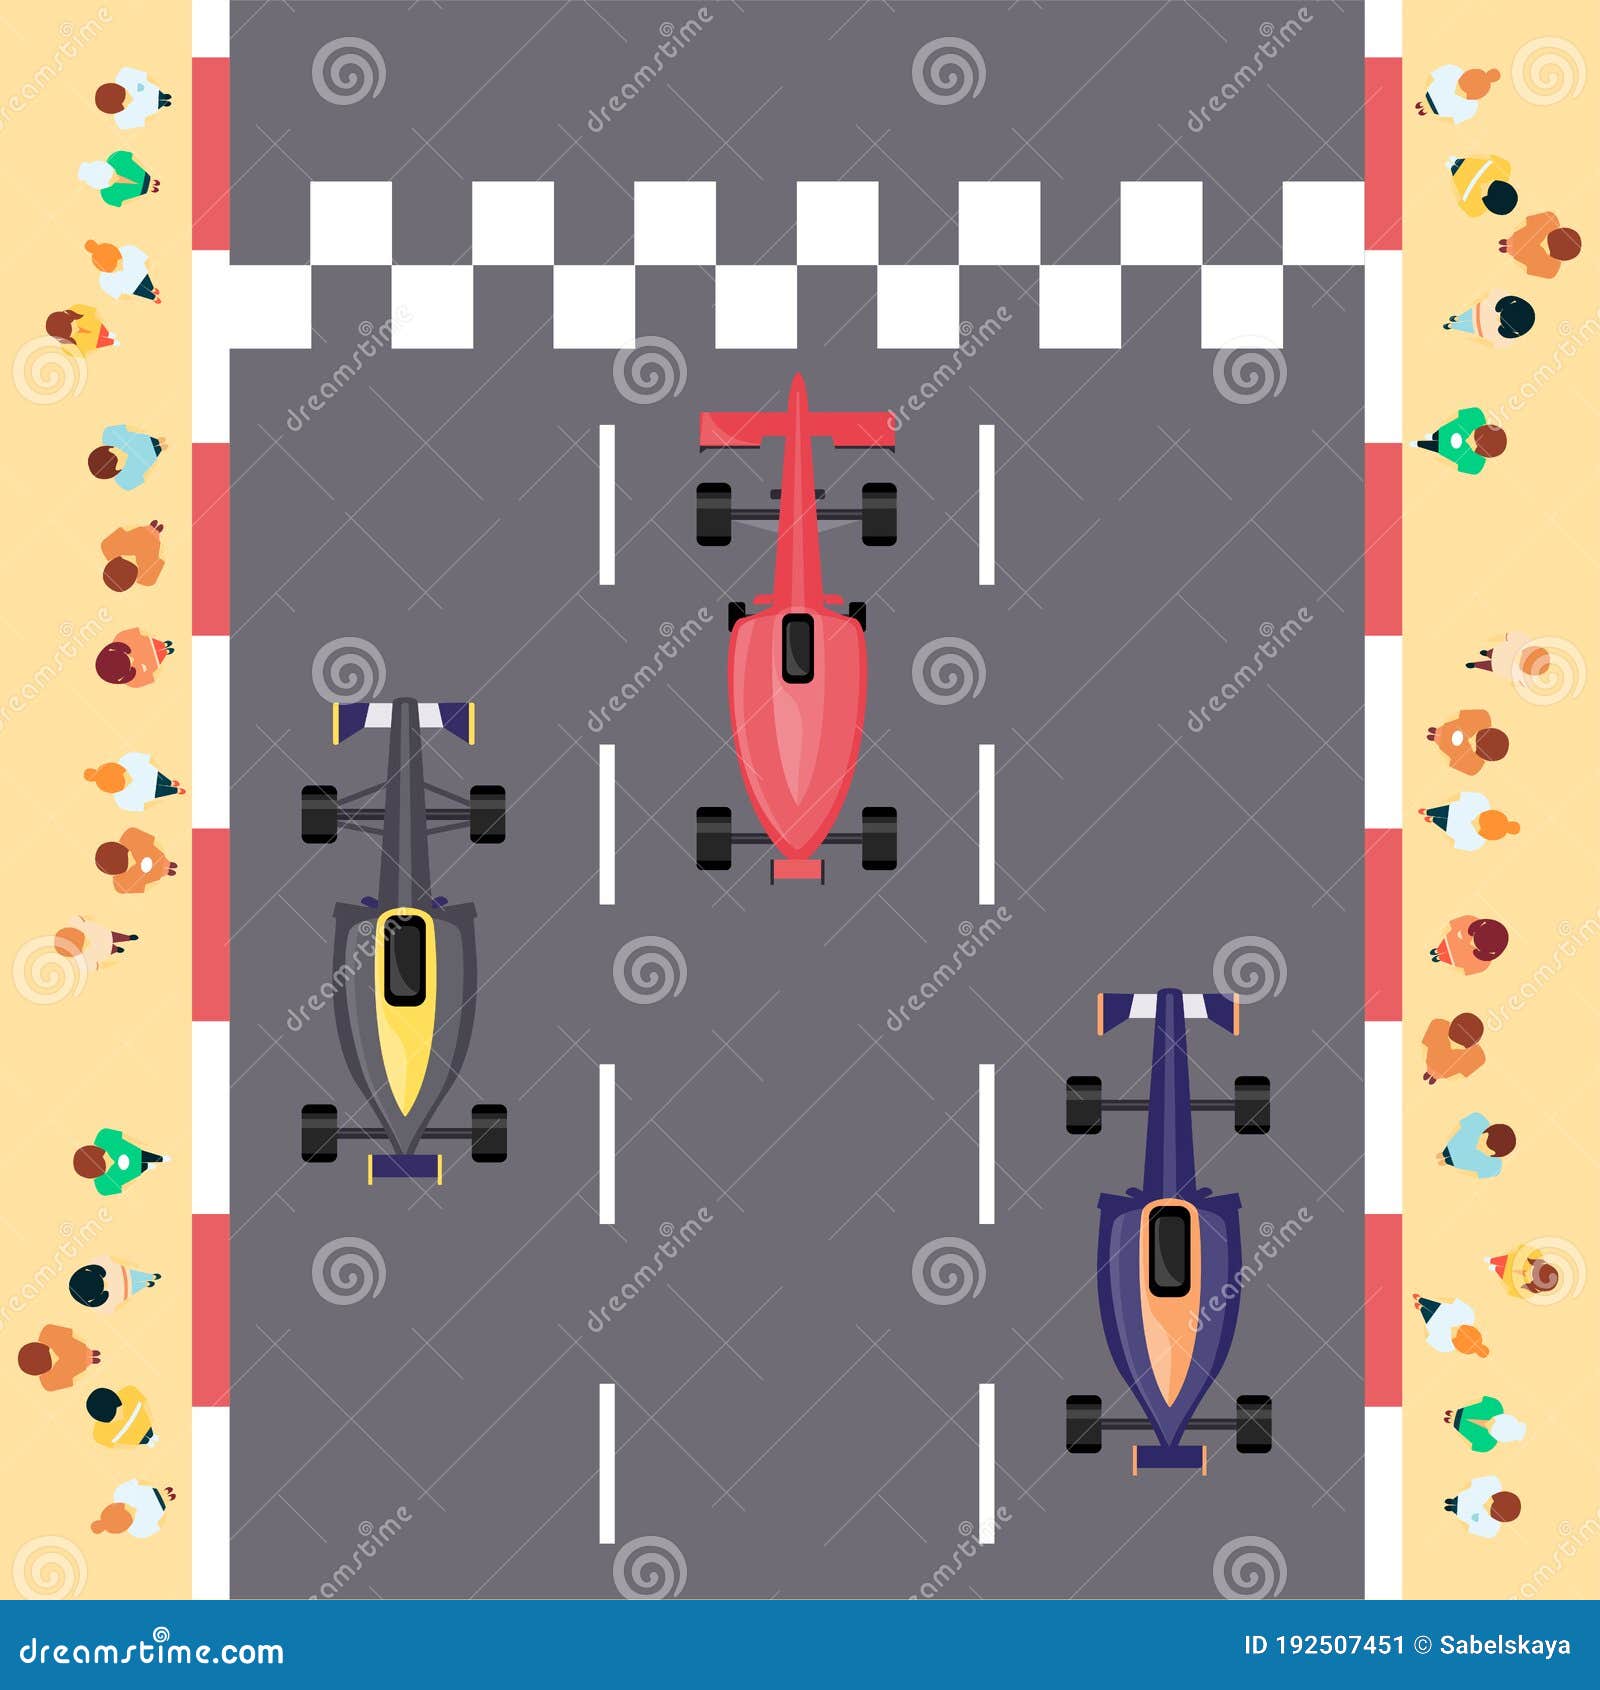 Corrida de carros! Desenho infantil dos quatro carros coloridos. Desenho  animado em português 